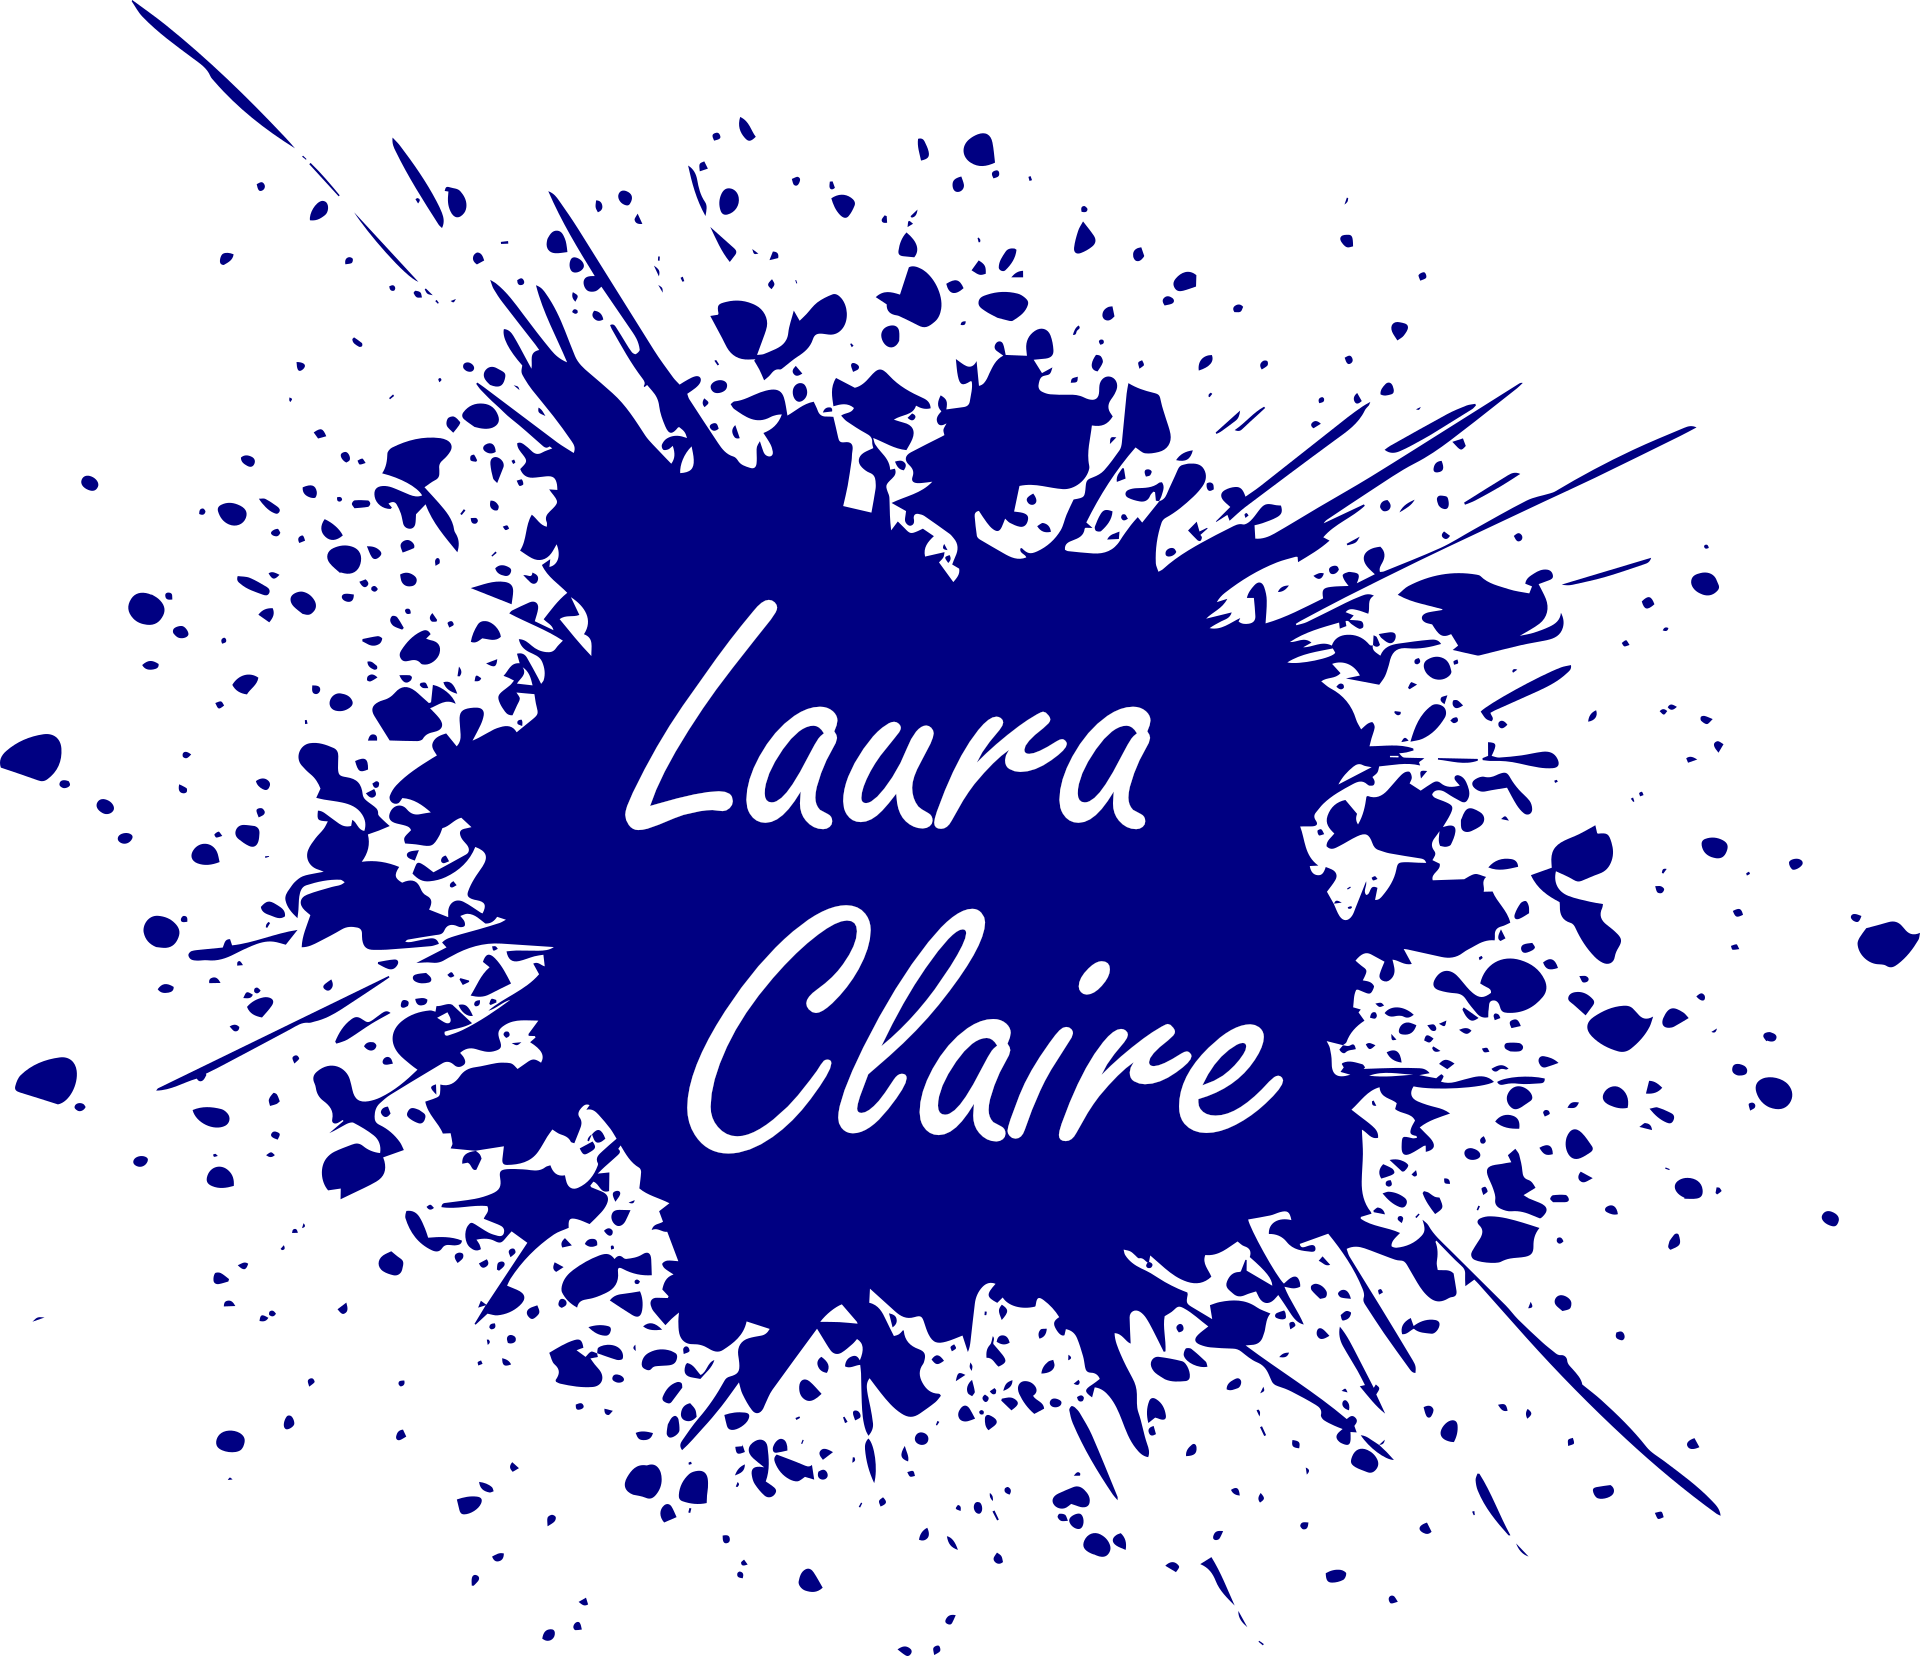 Voici le logo du site. Il représente une tâche d'encre de couleur bleue au centre de laquelle est écrit le nom d'auteure Laura Claire.